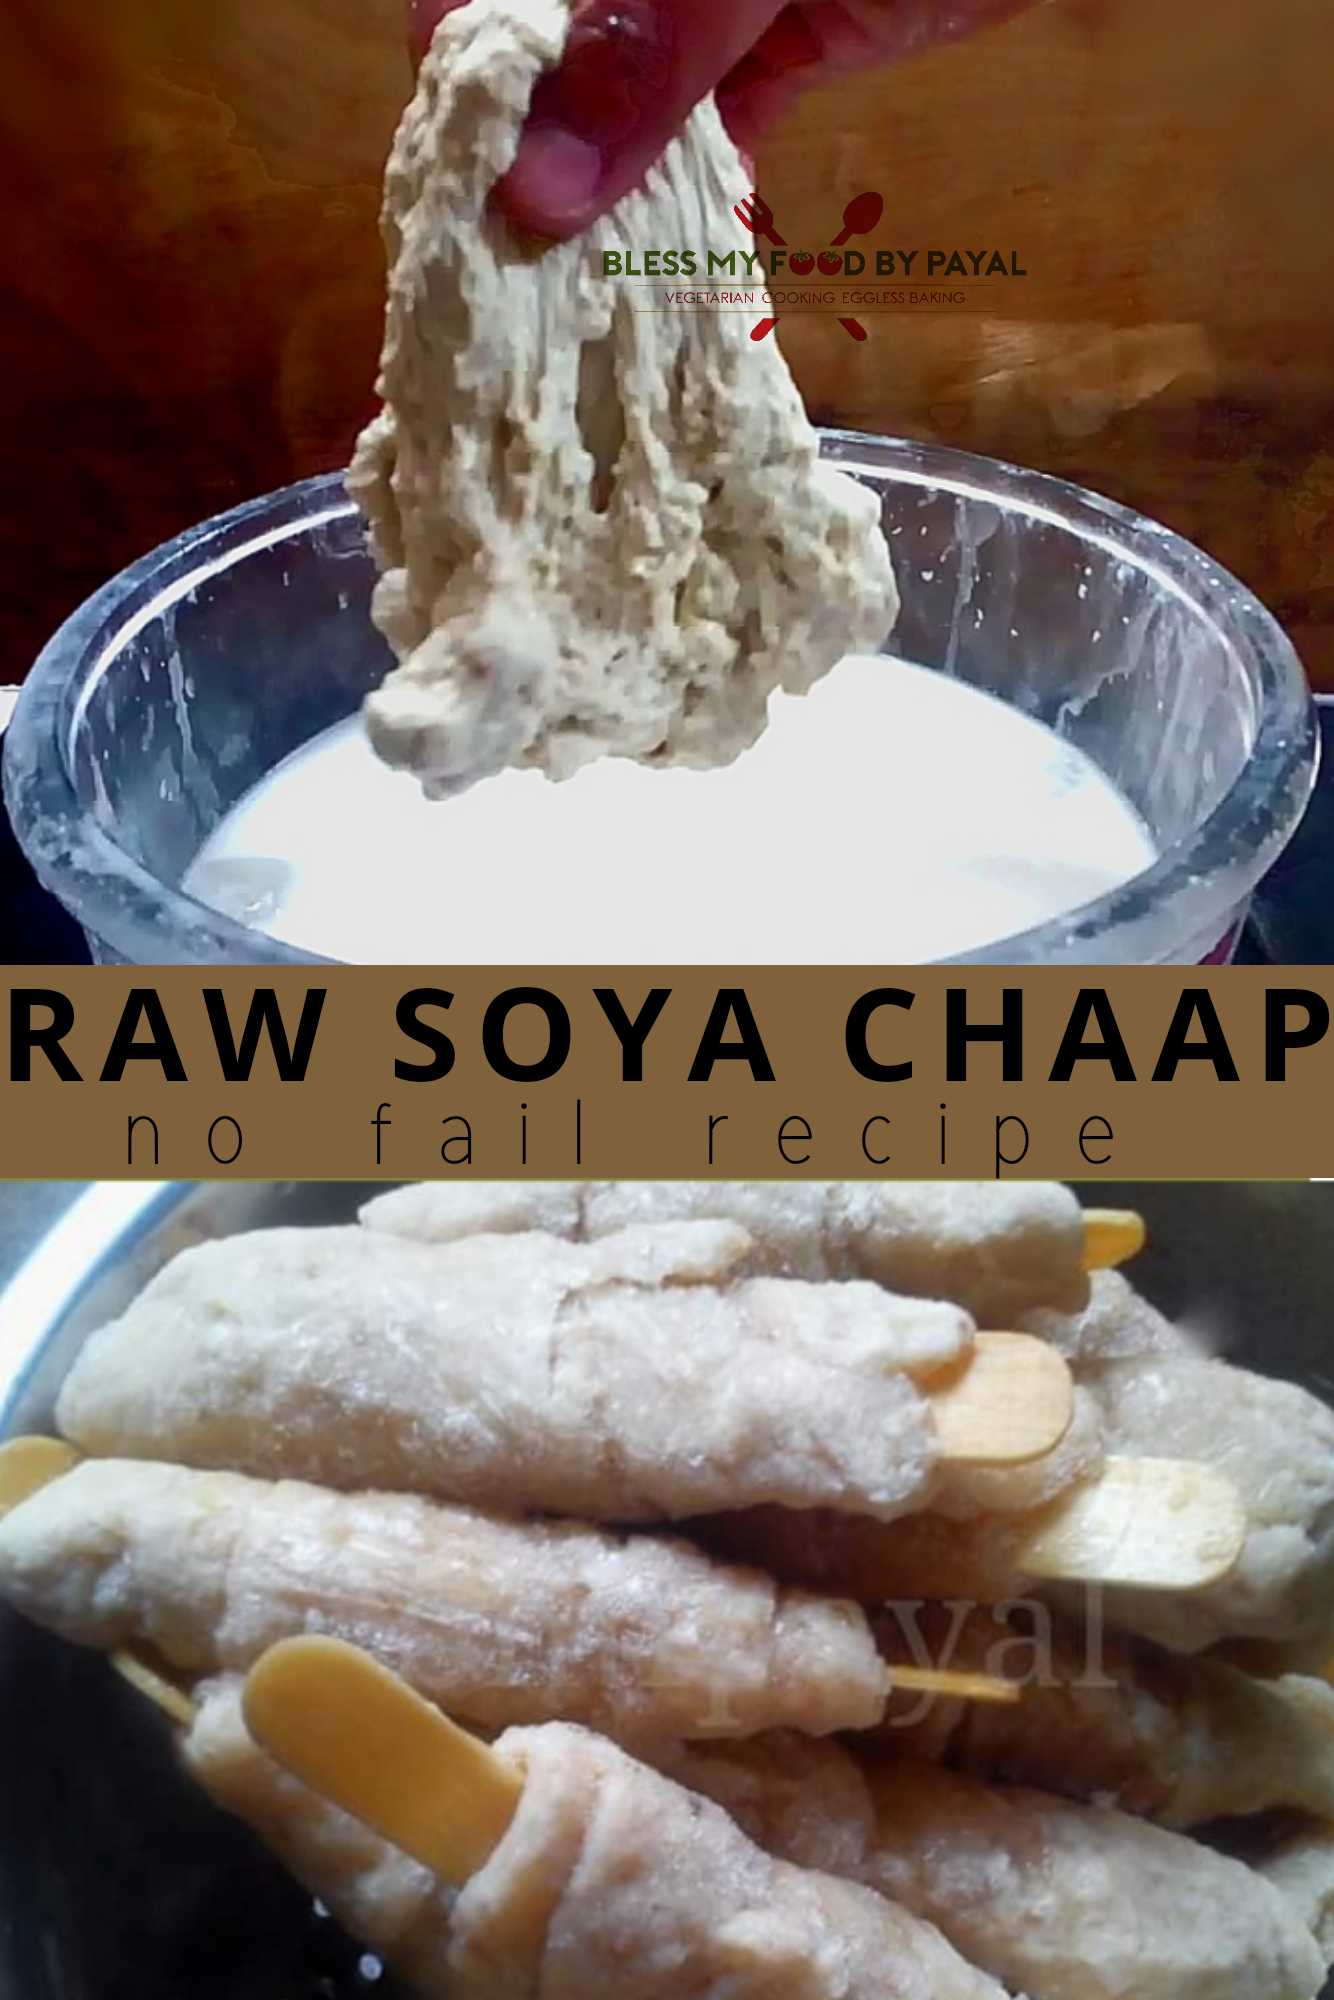 Raw soya chaap